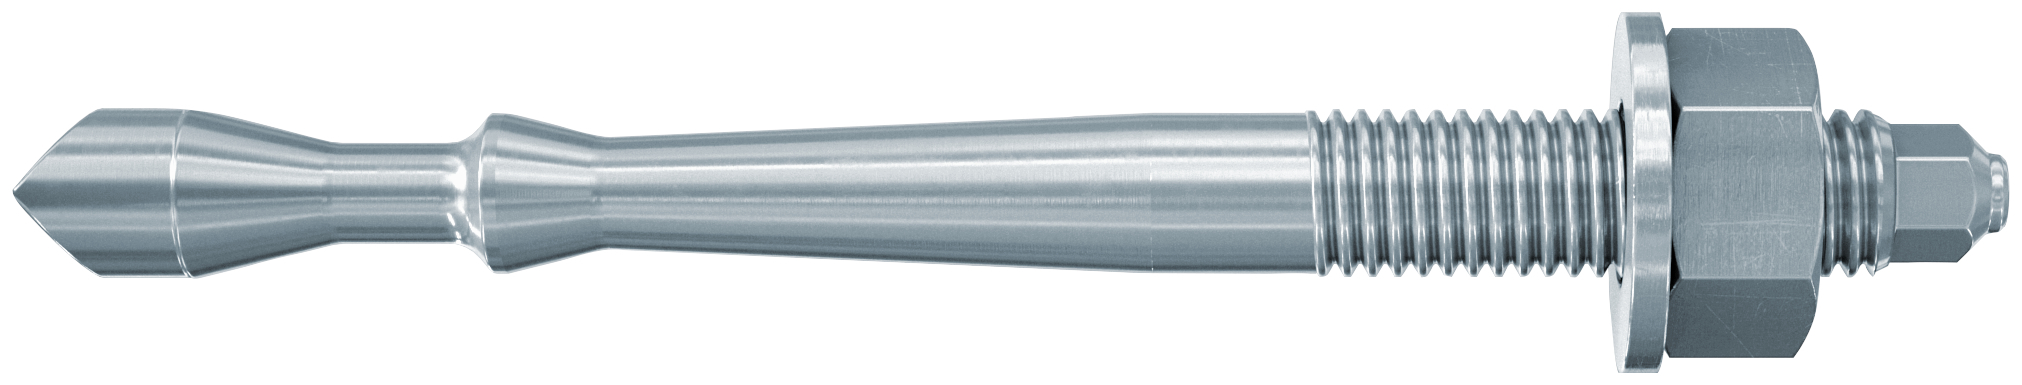 fischer Barra multicono in acciaio FHB II-A S M12x75/60 per ancorante chimico FIS HB (1 Pz.) Barra multicono corta in acciaio zincato classe 8.8. Massime prestazioni a trazione in calcestruzzo fessurato e a ridotte distanze dai bordi..